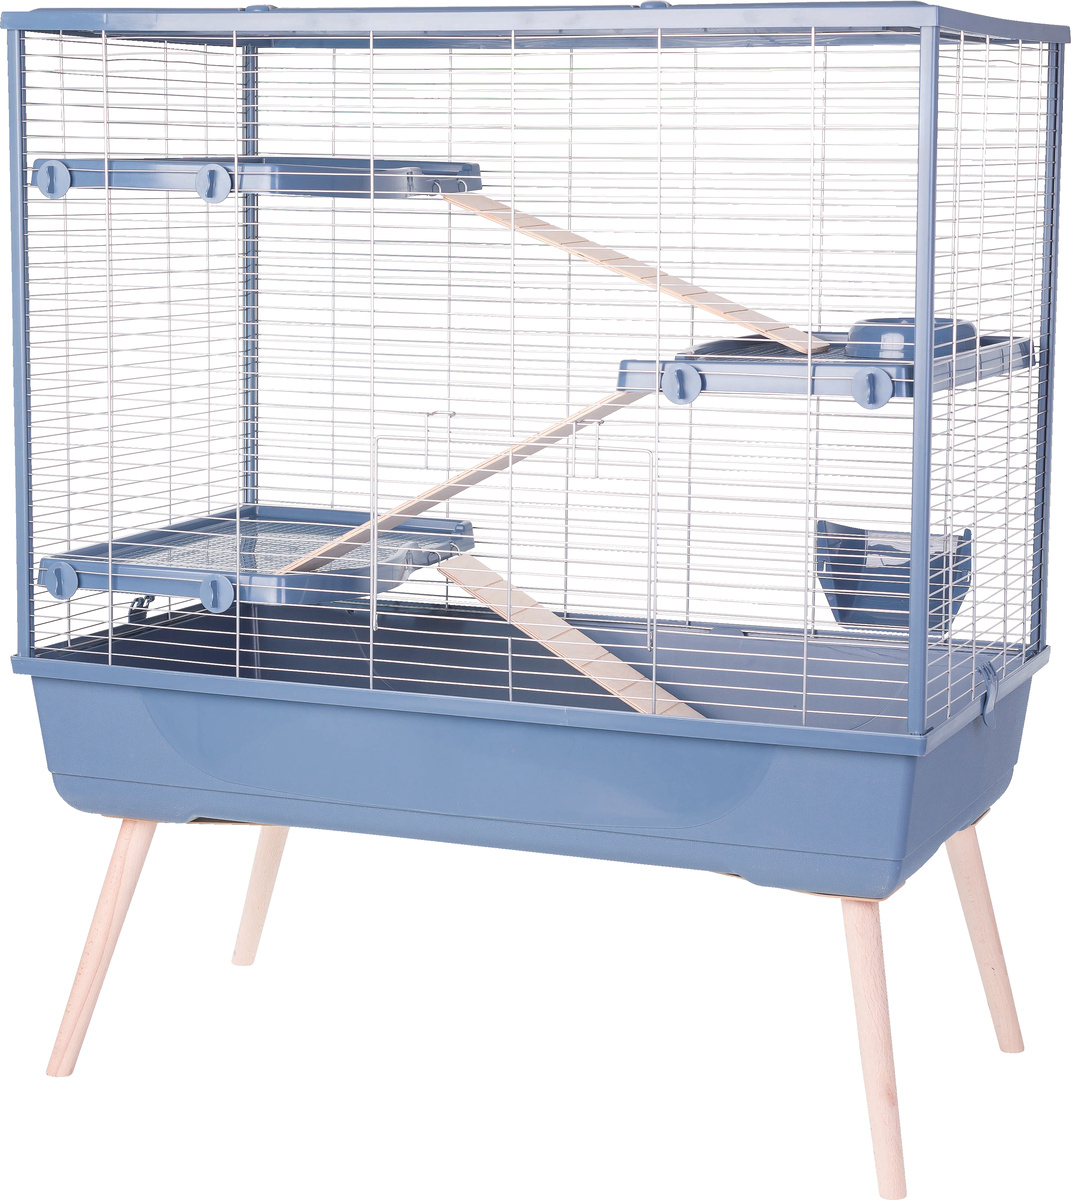 Jaula para conejos y roedores grandes - Alt 92 cm a 114 cm - Zolux NEOLIFE azul